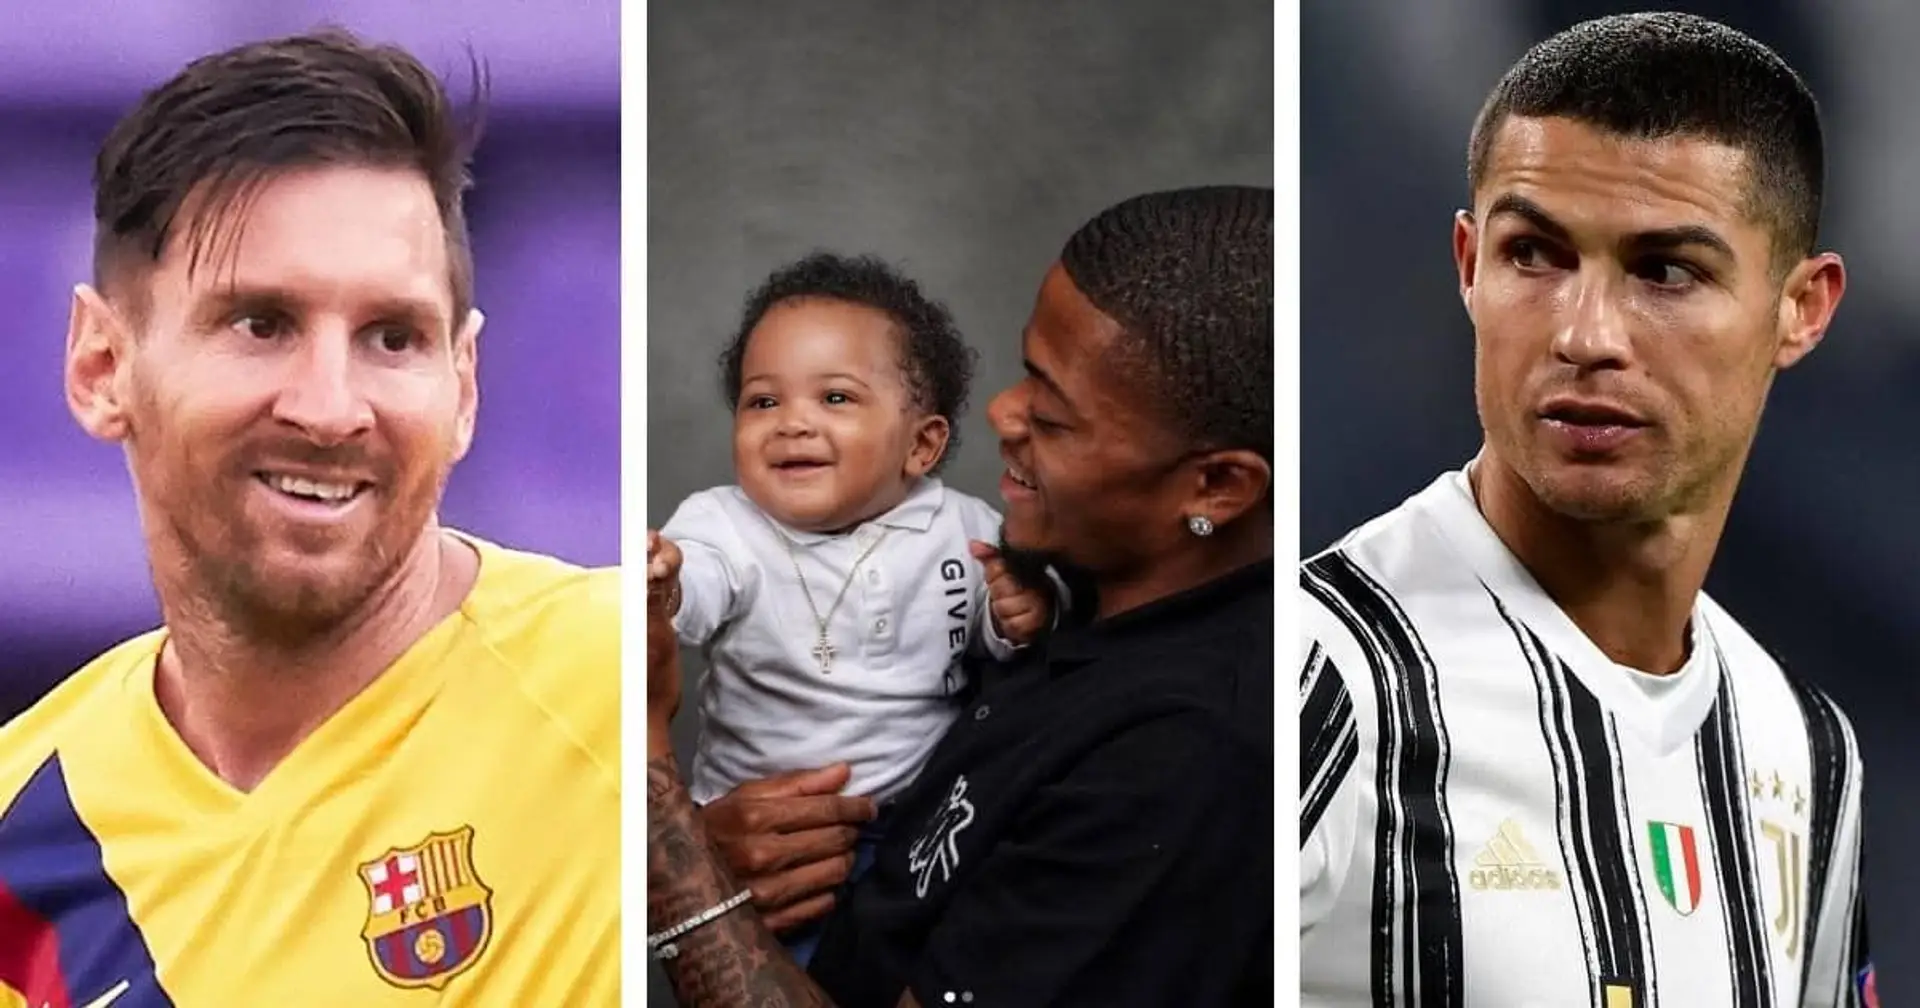 "Cristiano ist ein schöner Name, der gut zu Leo passt": Hat Leon Bailey seinen neugeborenen Sohn nach Messi und Ronaldo benannt?